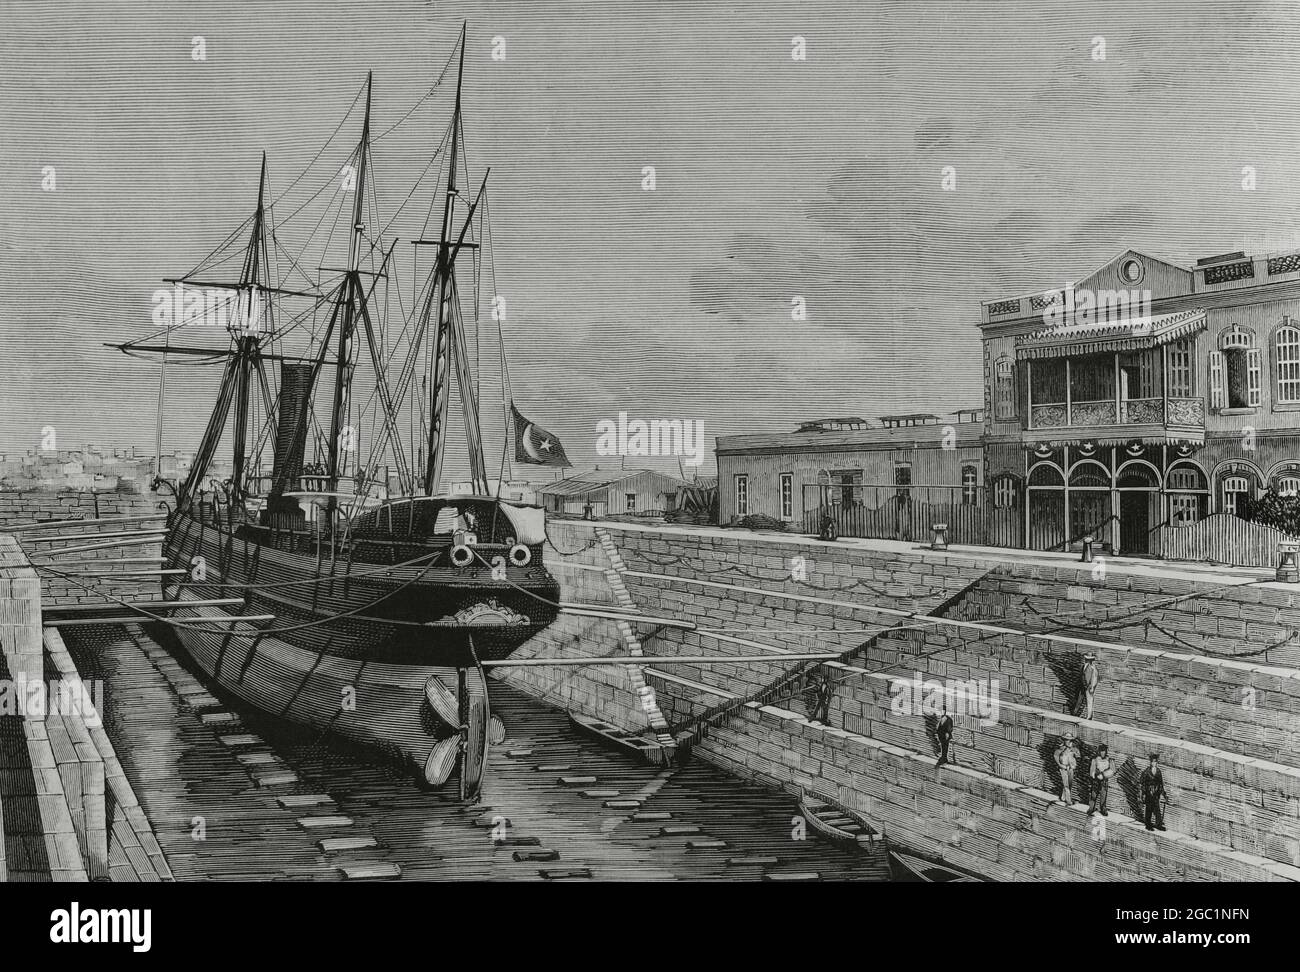 Egipto, Suez. Muelle seco, construido por el gobierno egipcio. Dibujo de A. de Caula. Grabado. La Ilustración Española y Americana, 1882. Foto de stock